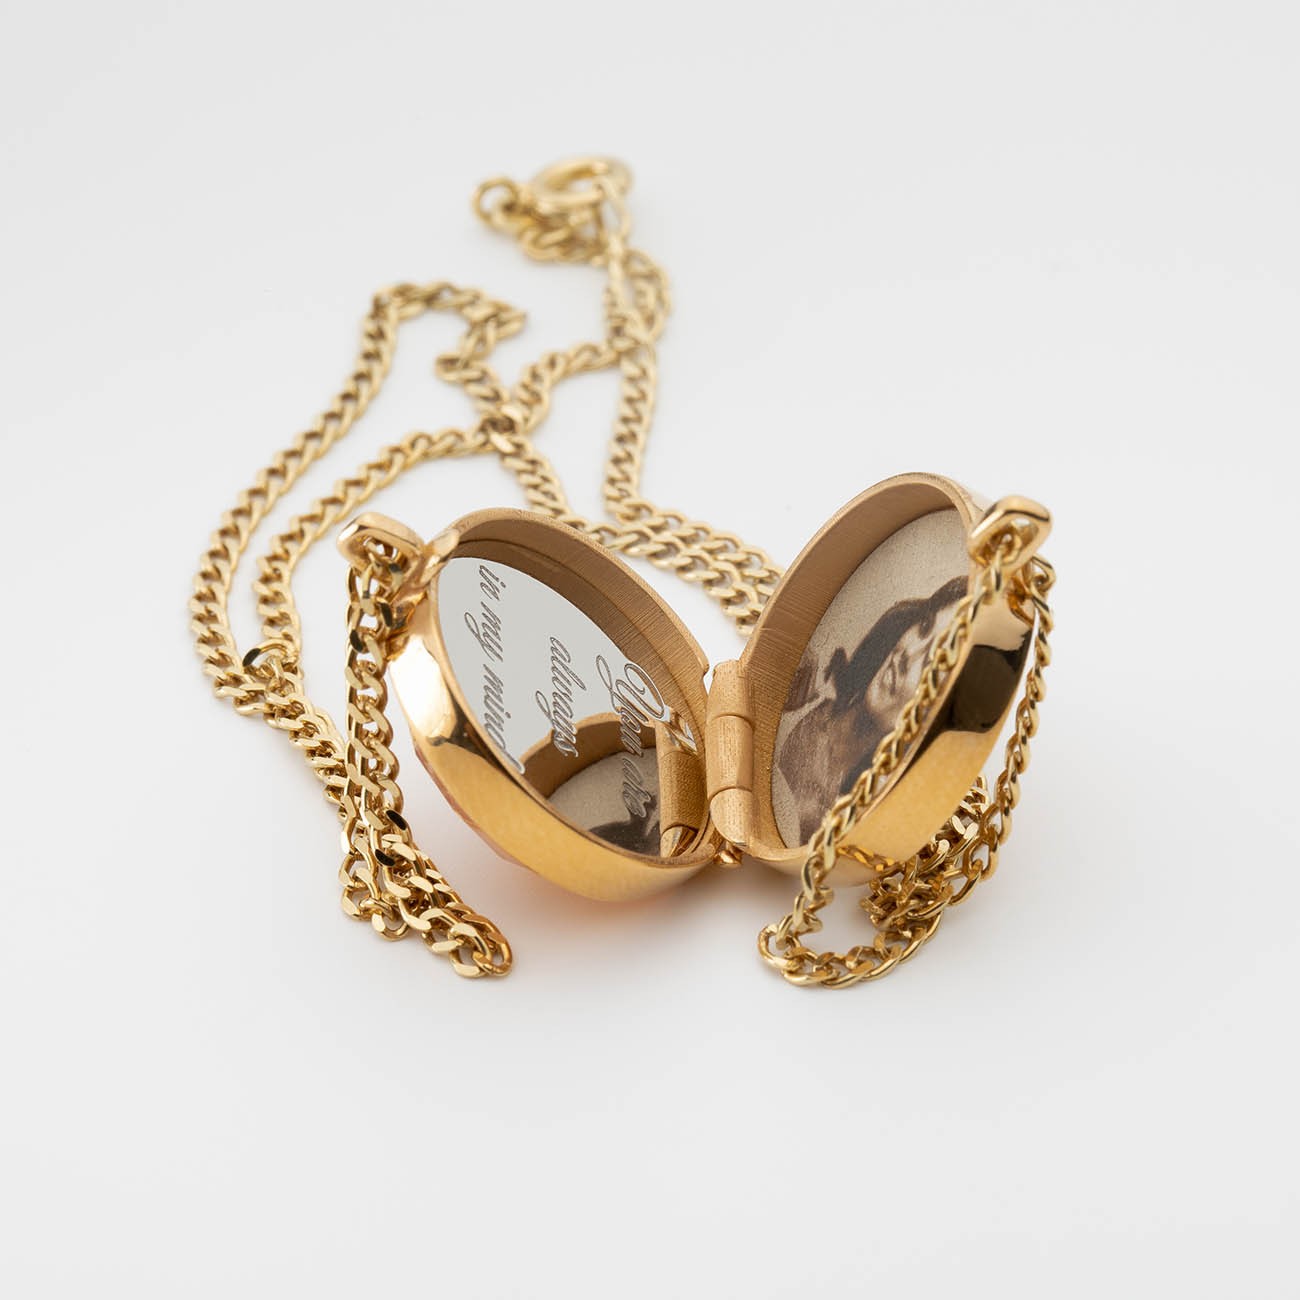 Halskette mit Medaillon-Anhänger, graviert & foto, tigerauge stein, sterlingsilber 925